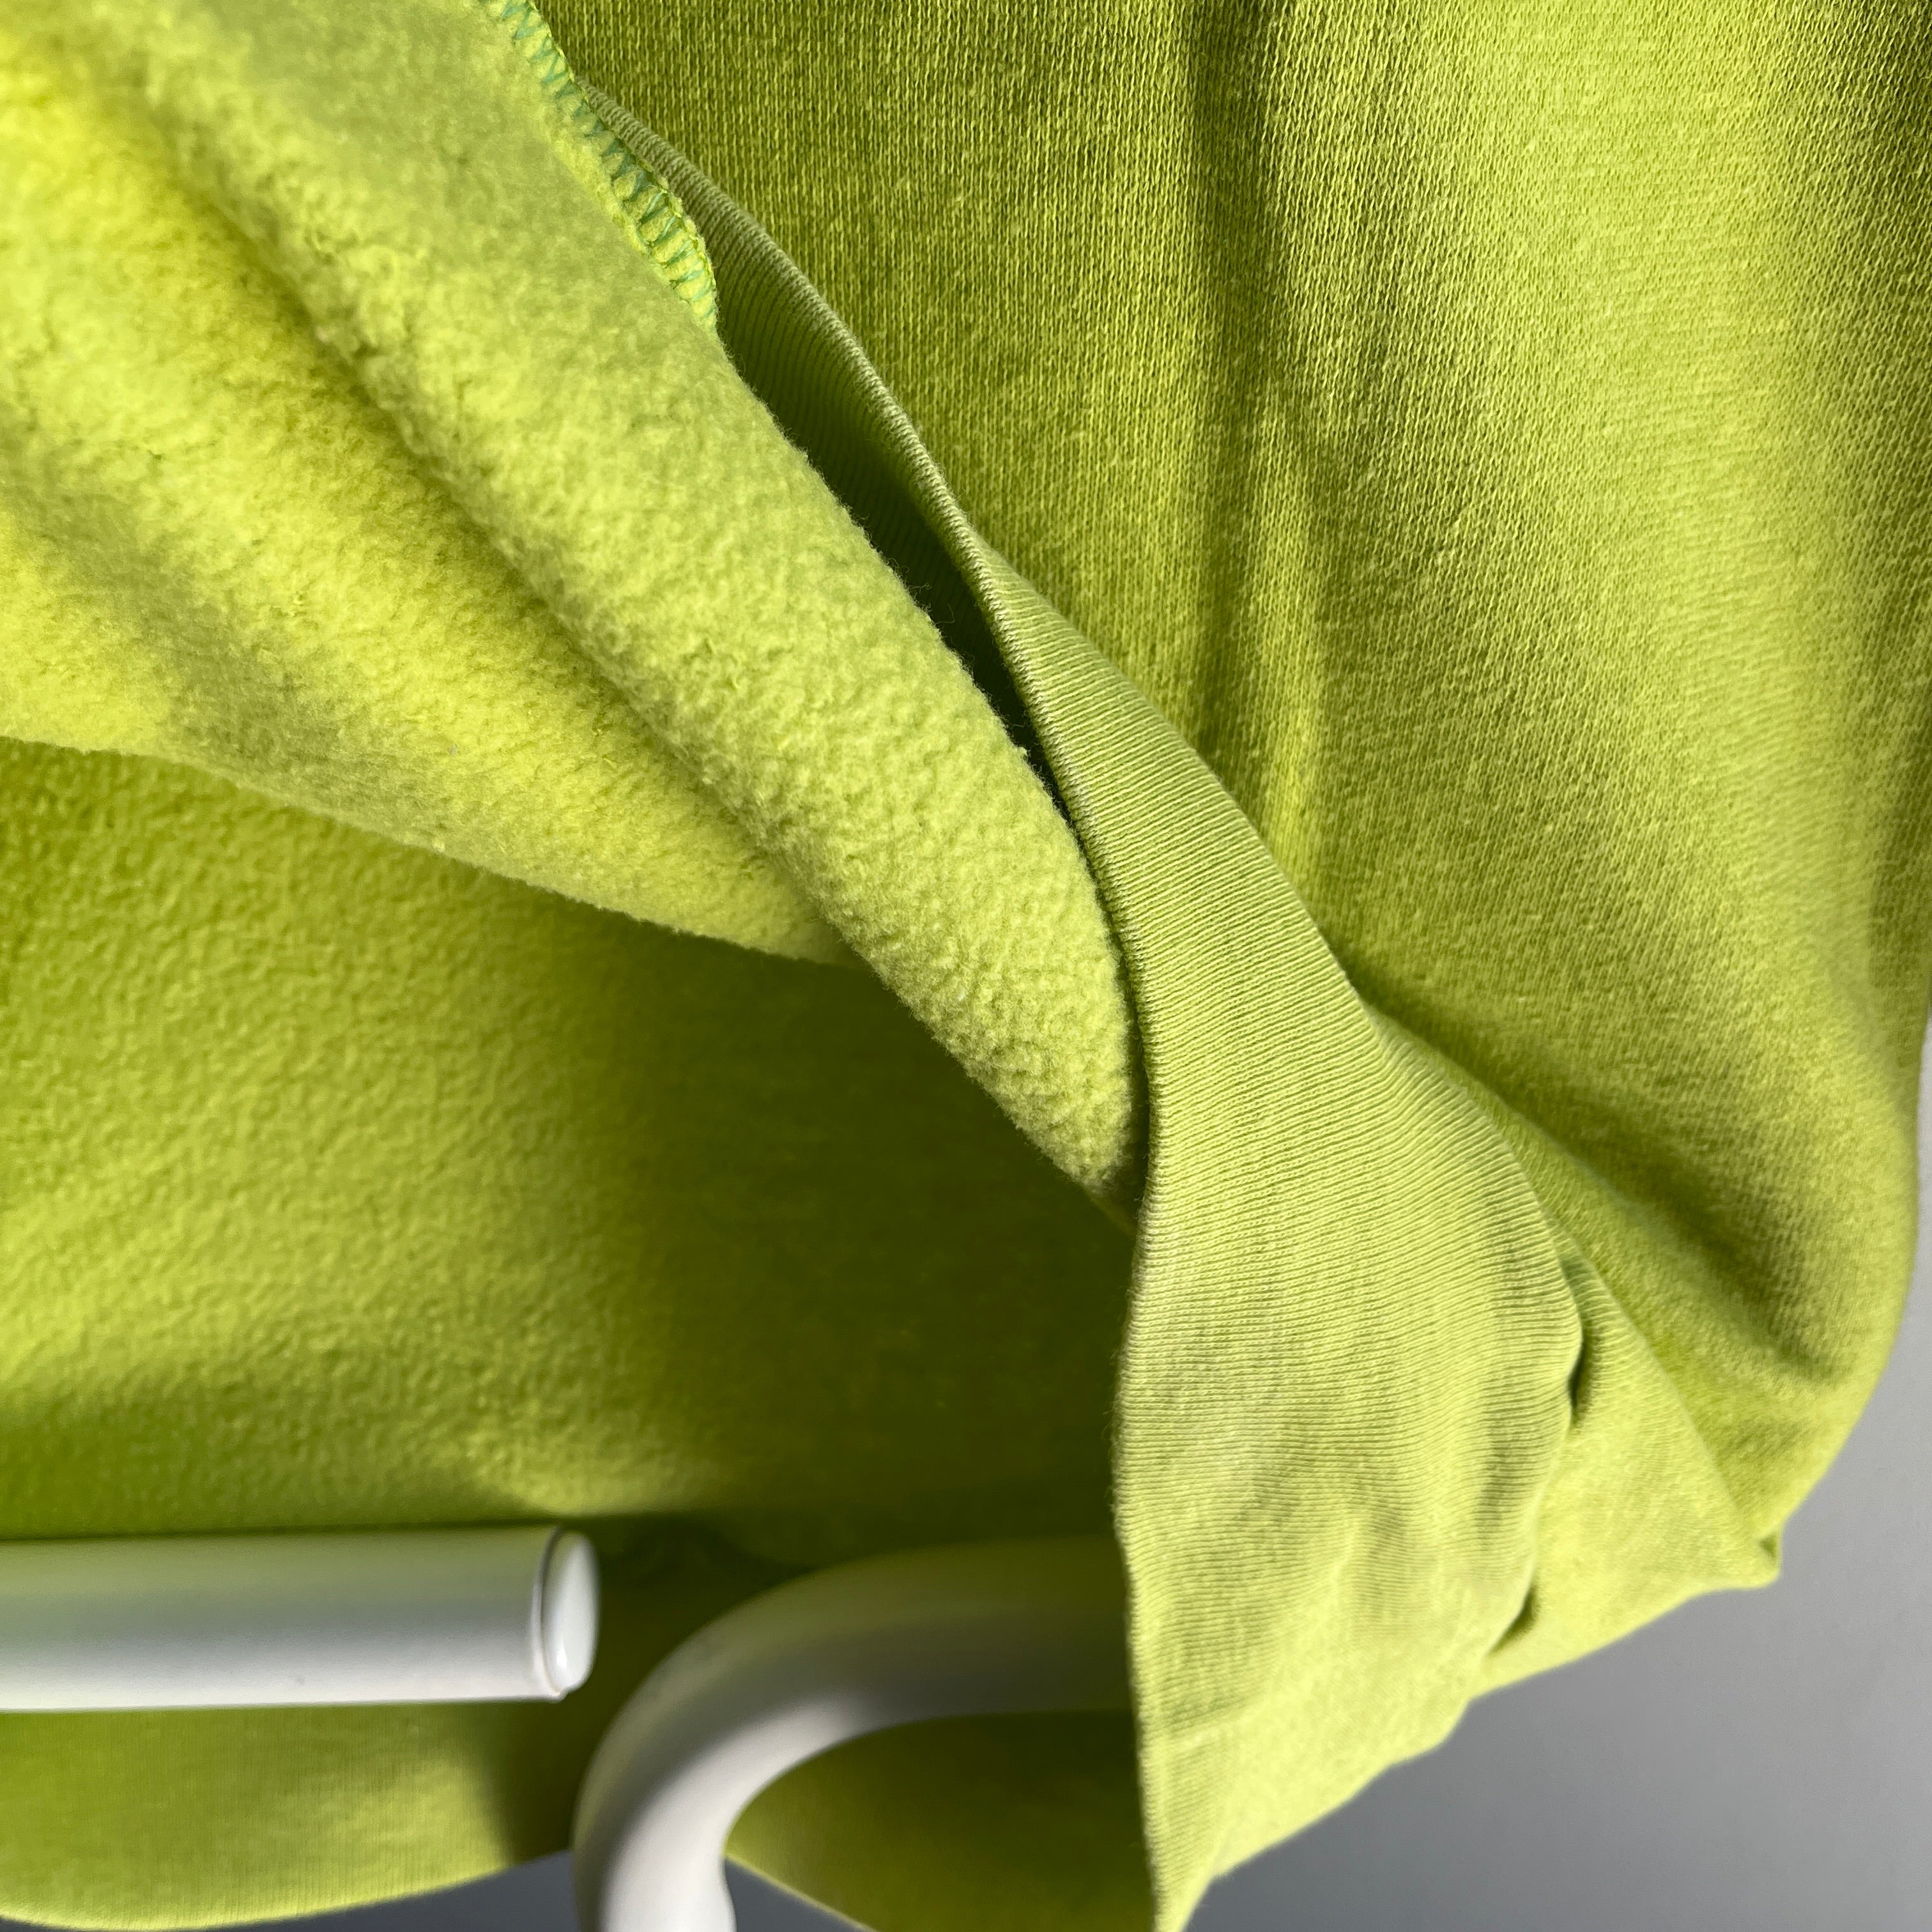 1989 Illegale Alyssa Ashley Fragrance Sweat-shirt publicitaire vert citron